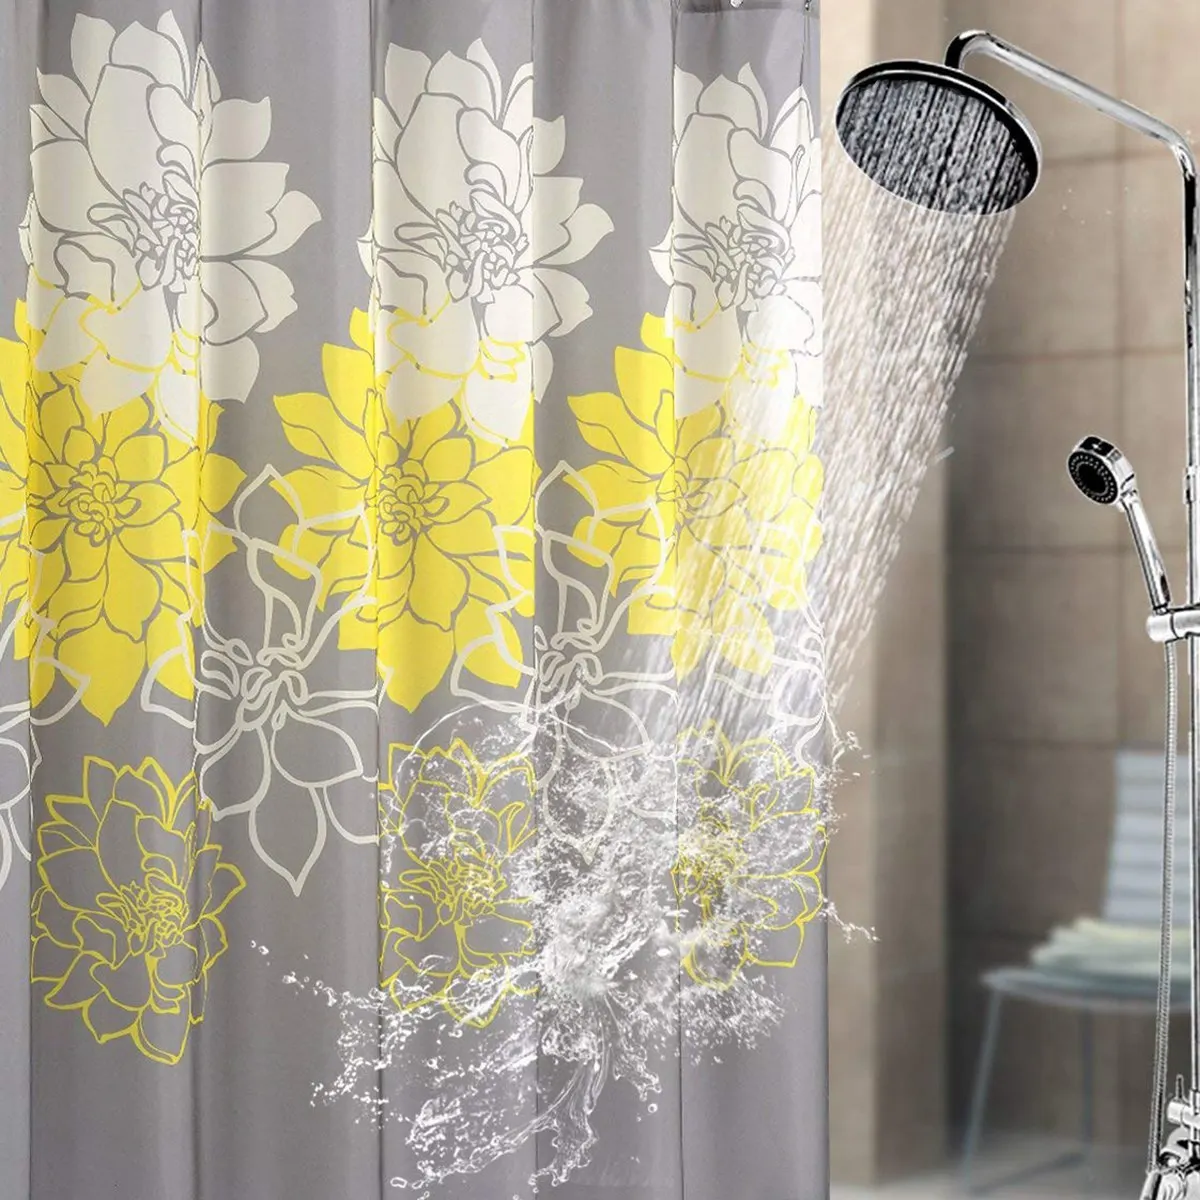 Тканевая занавеска для душа с цветком пиона, устойчивая к плесени, водонепроницаемая стандартная занавеска для ванной комнаты, желтая и серая